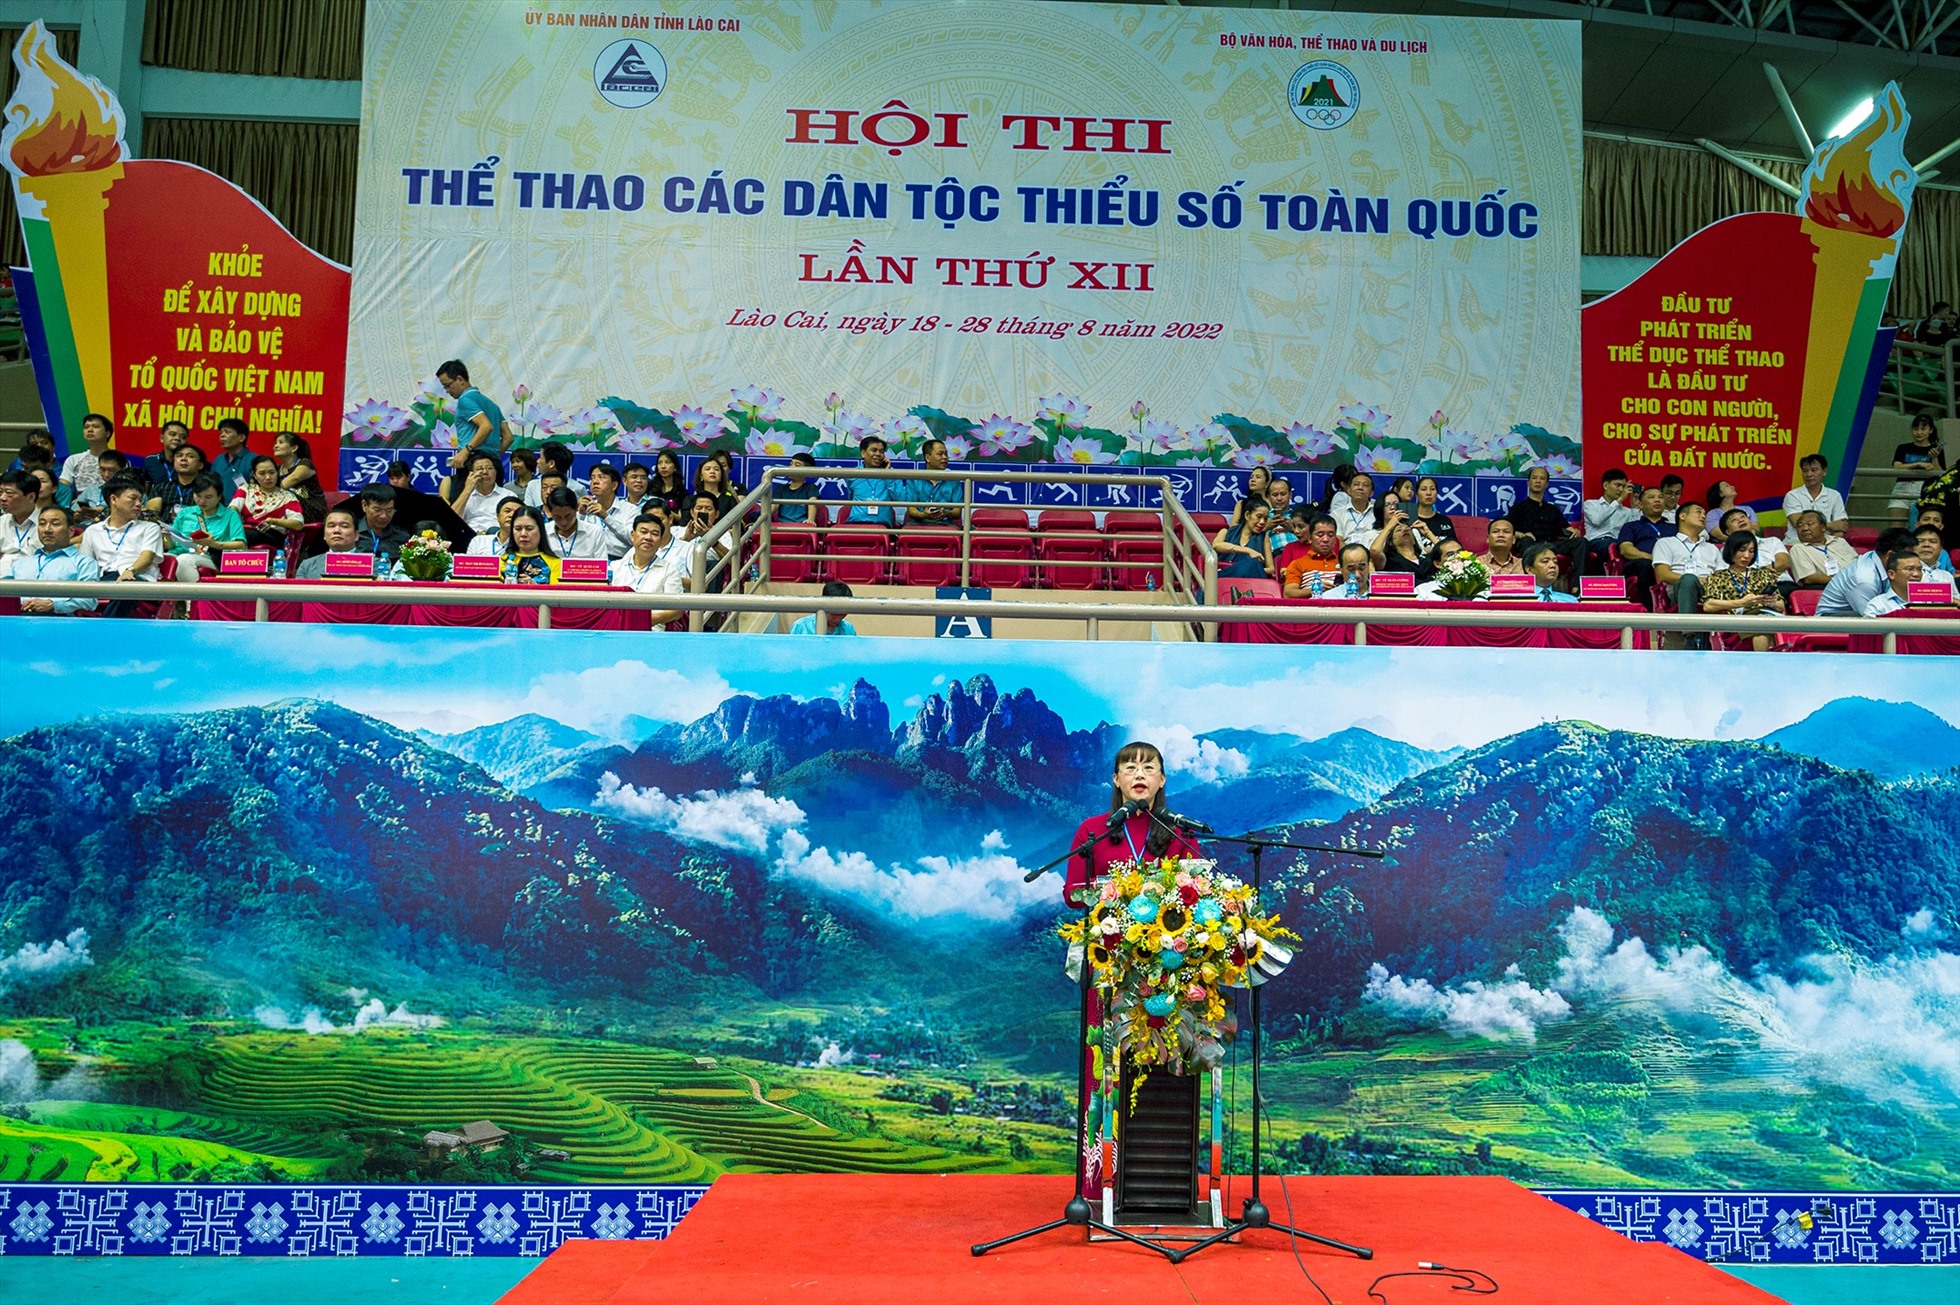 Bà Giàng Thị Dung - Tỉnh ủy viên, Phó Chủ tịch UBND tỉnh Lào Cai, phát biểu chào mừng lễ khai mạc. Ảnh: Thu Hương